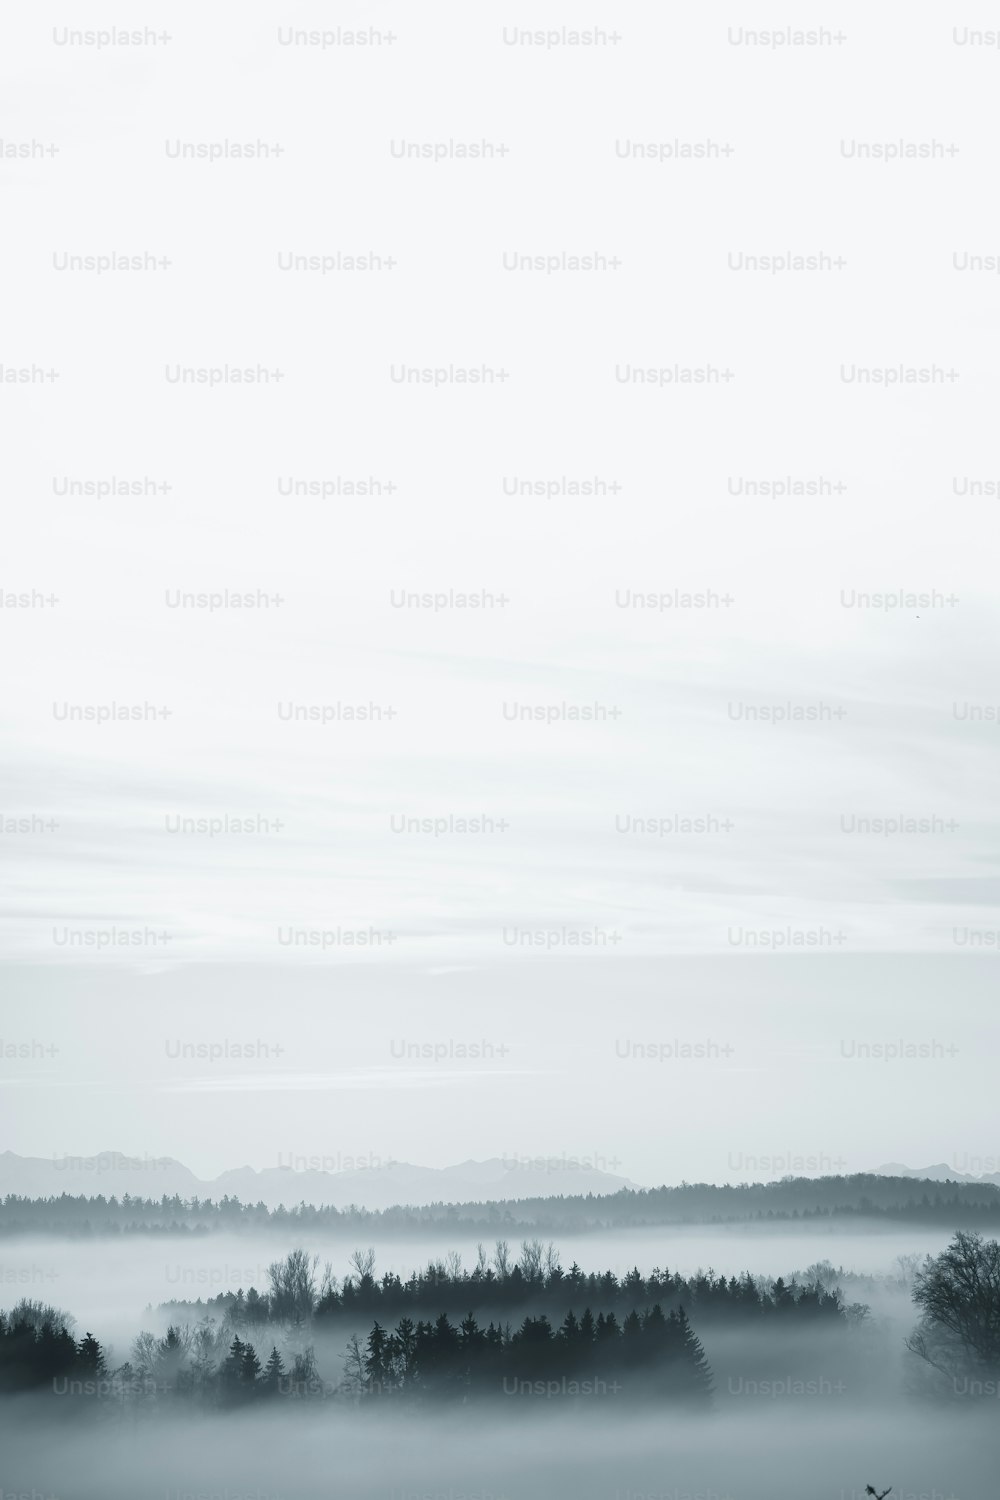 Una foto en blanco y negro de un paisaje brumoso